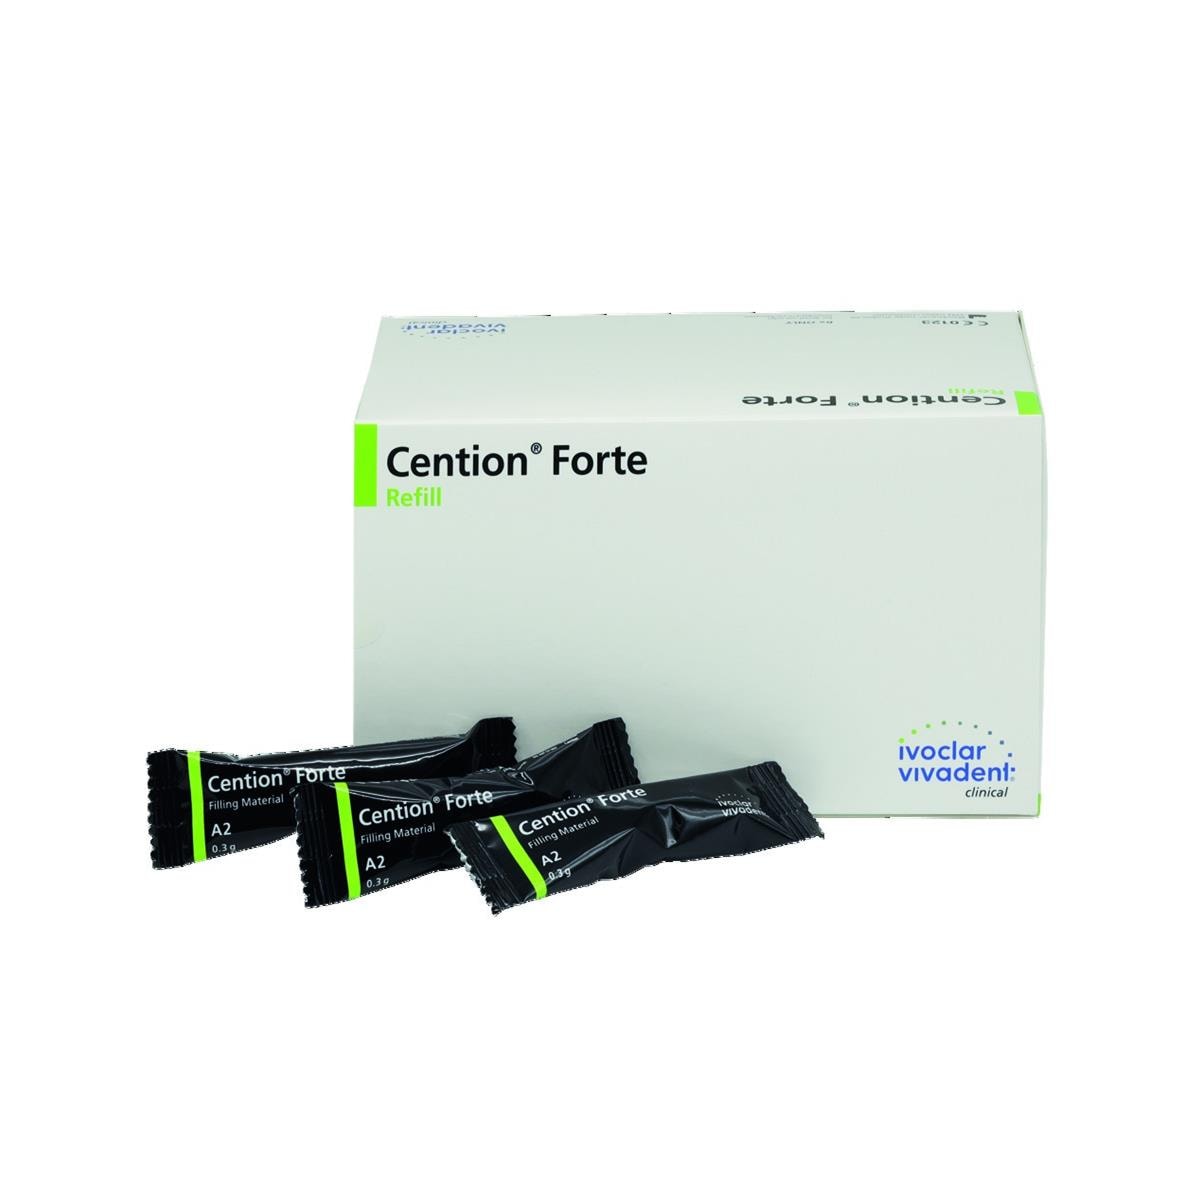 Cention Forte Refill Ivoclar Vivadent